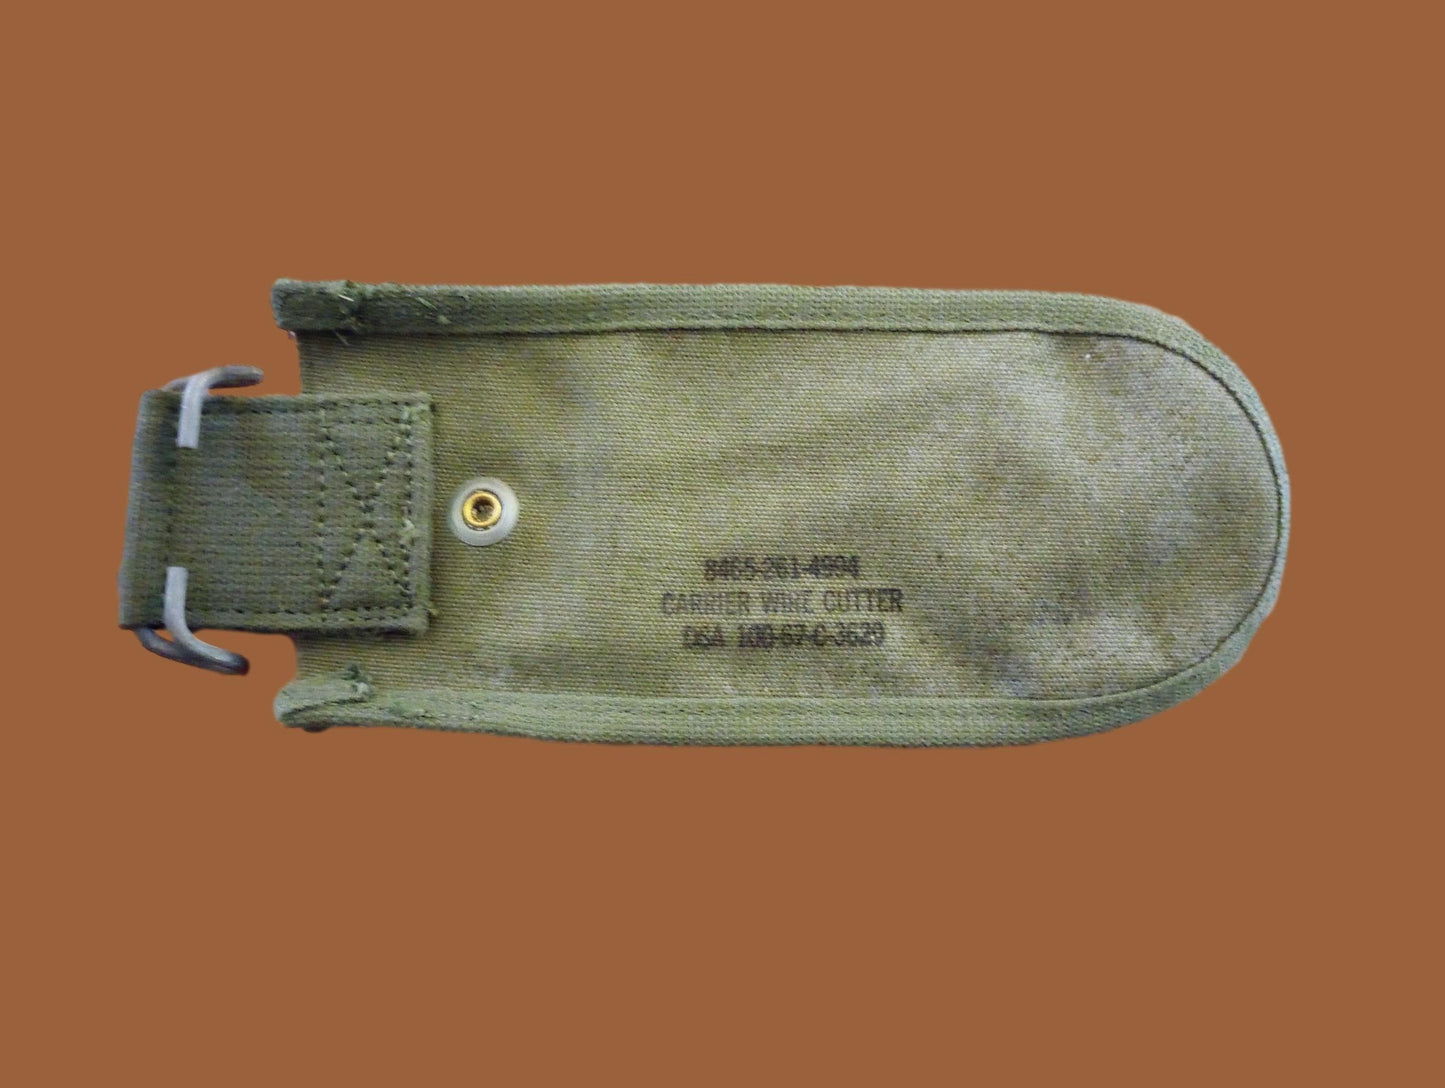 Vietnam Issue U.S Army M-1938 Wire Cutter Belt Pouch Green Cotton Duck Original